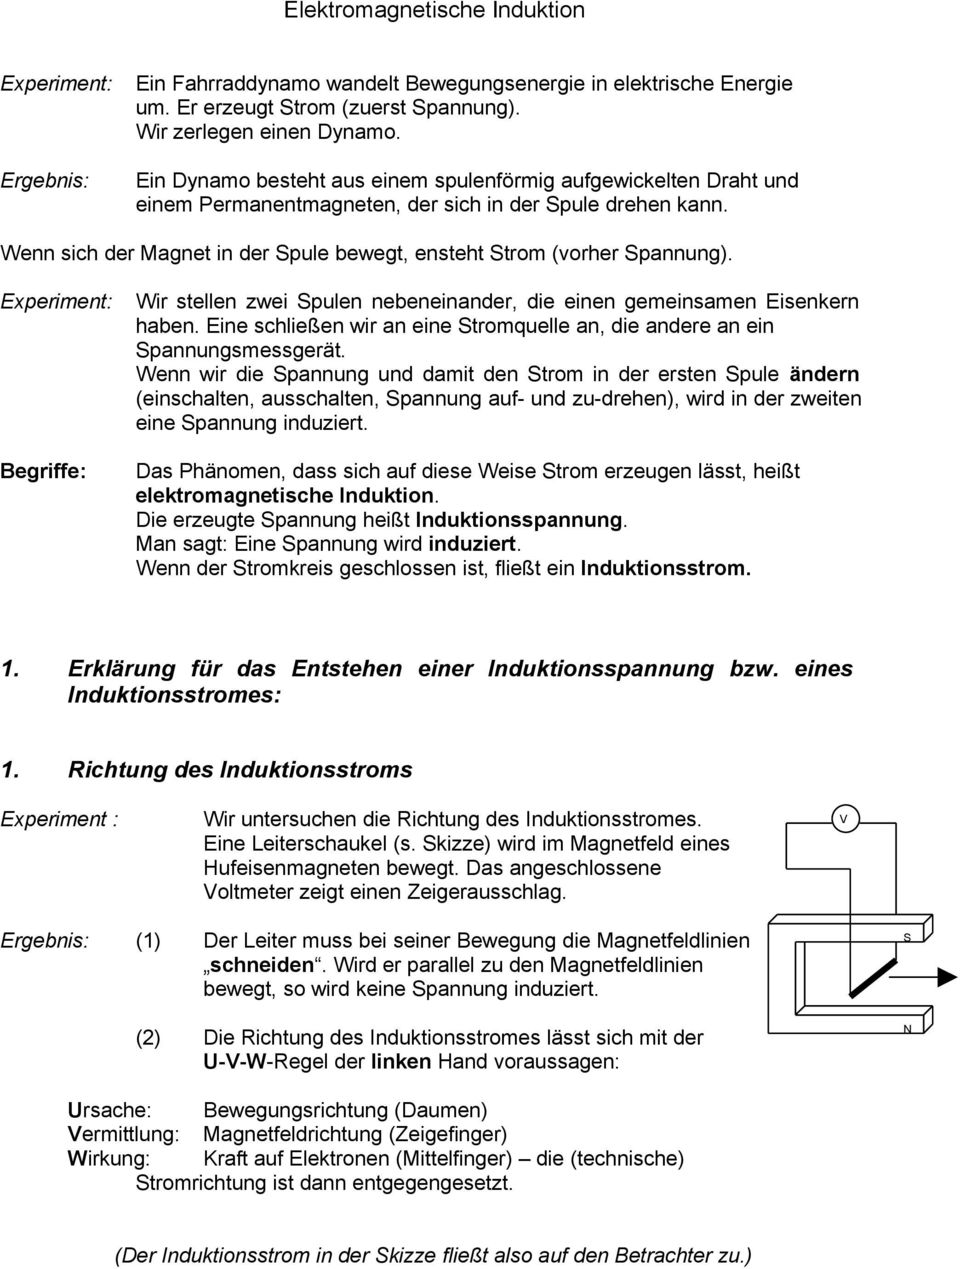 Elektromagnetische Induktion. 1. Erklärung für das Entstehen einer  Induktionsspannung bzw. eines Induktionsstromes: - PDF Free Download